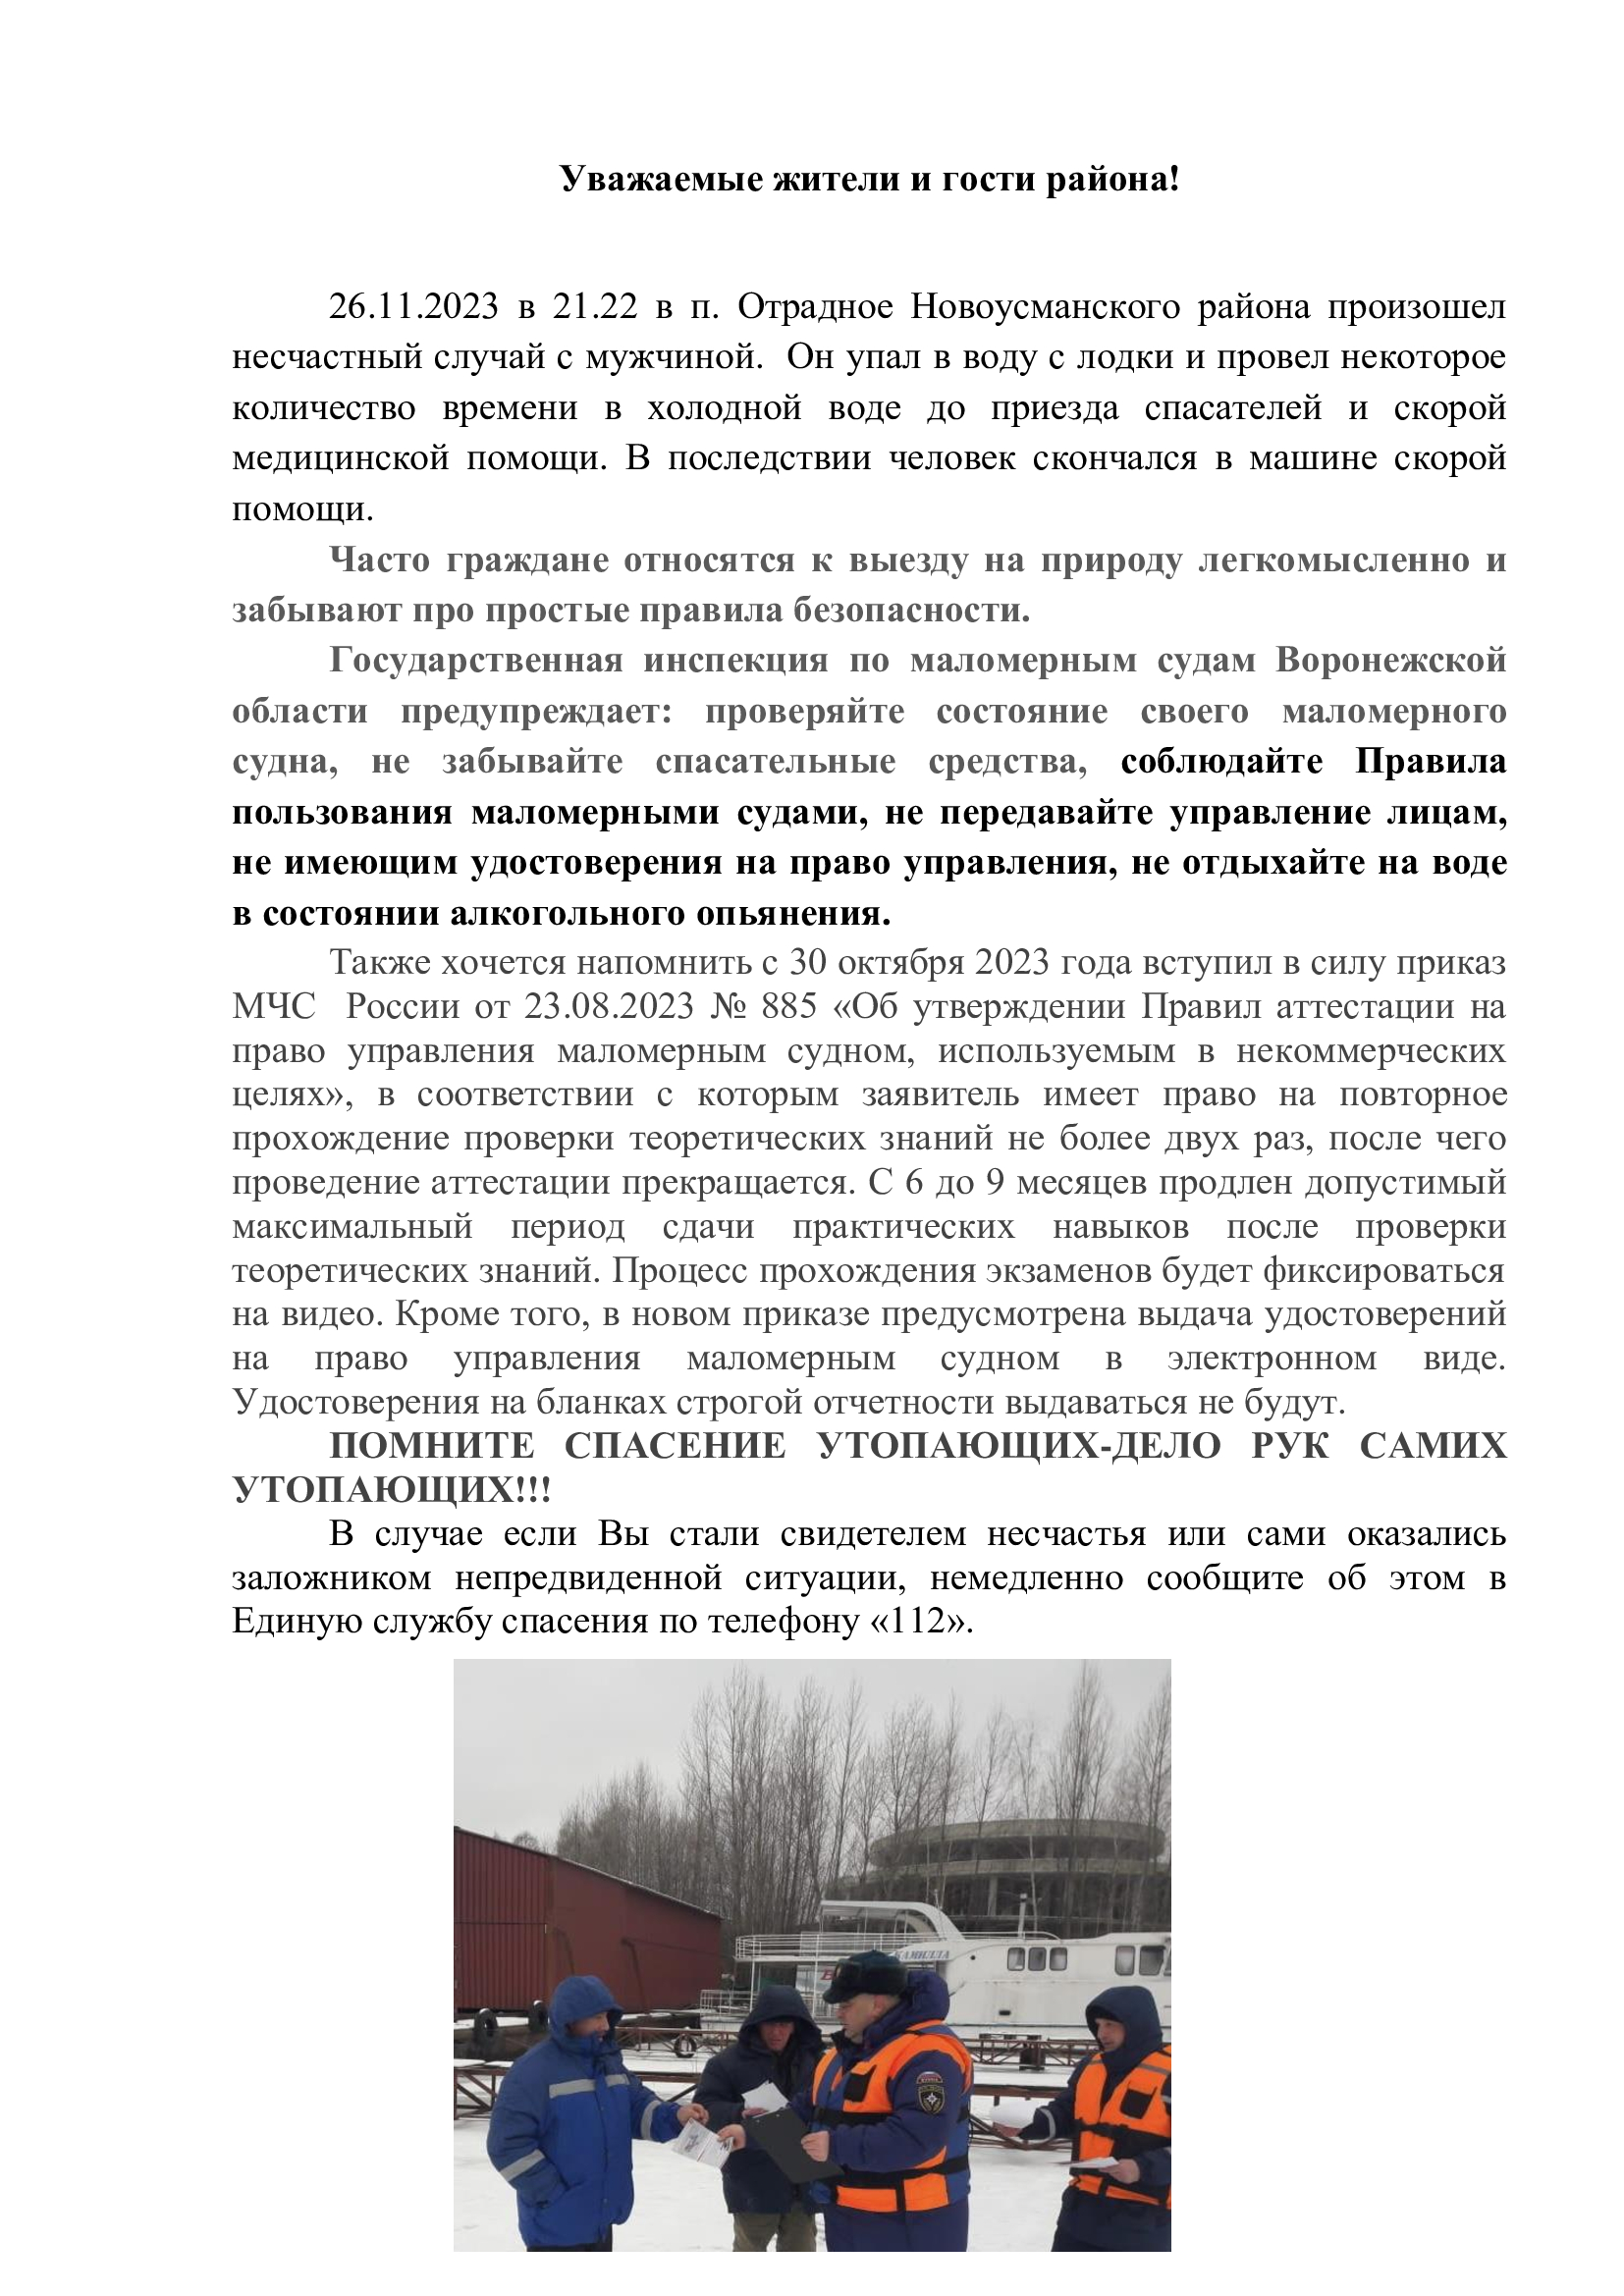 Государственная инспекция по маломерным судам Воронежской области предупреждает.